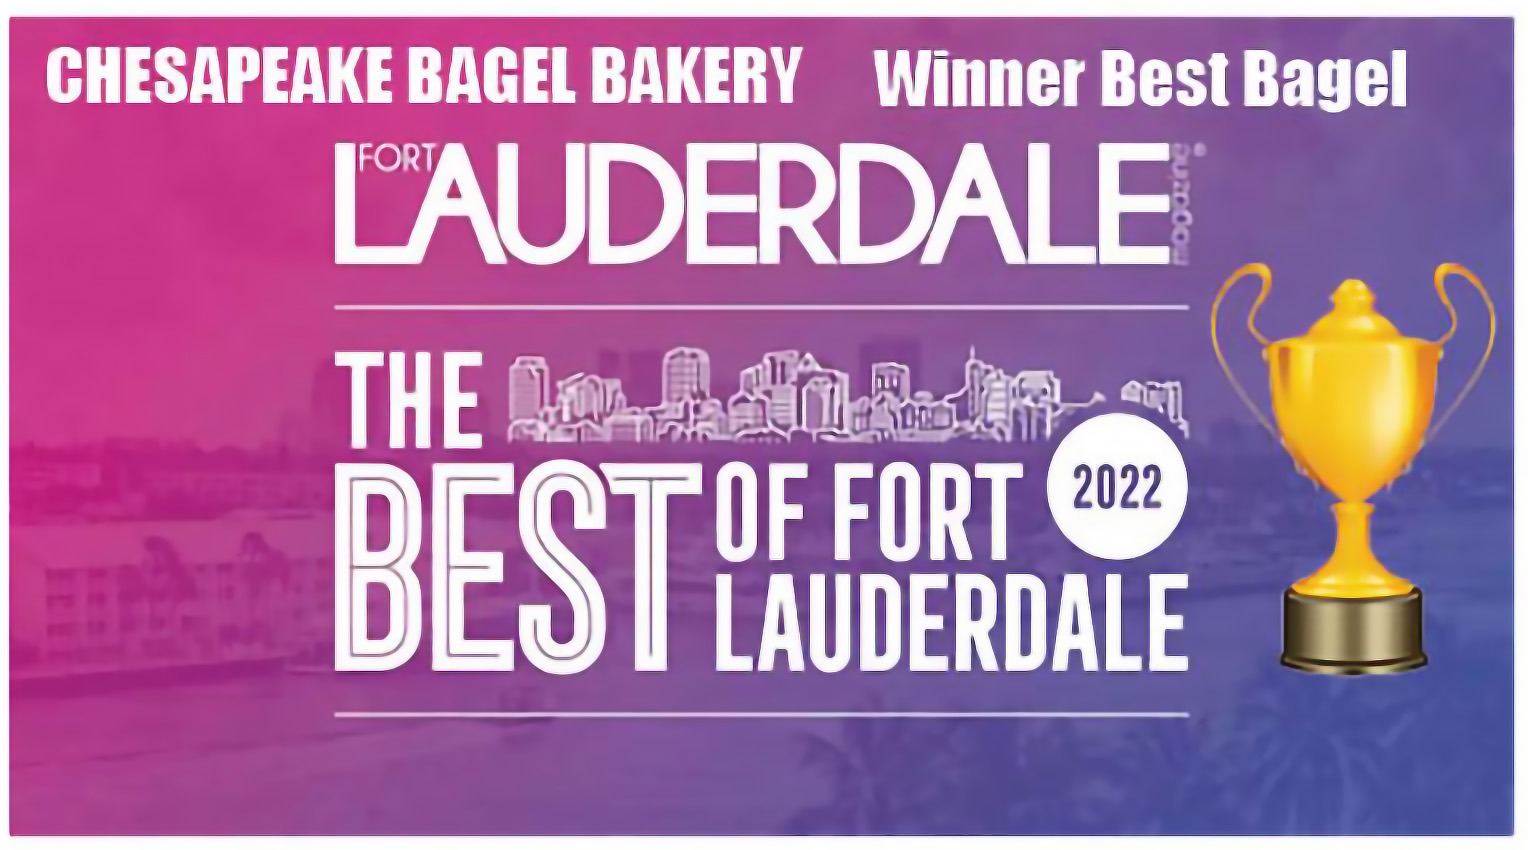 Chesapeake best bagel of Fort Lauderdale winner award in 2022